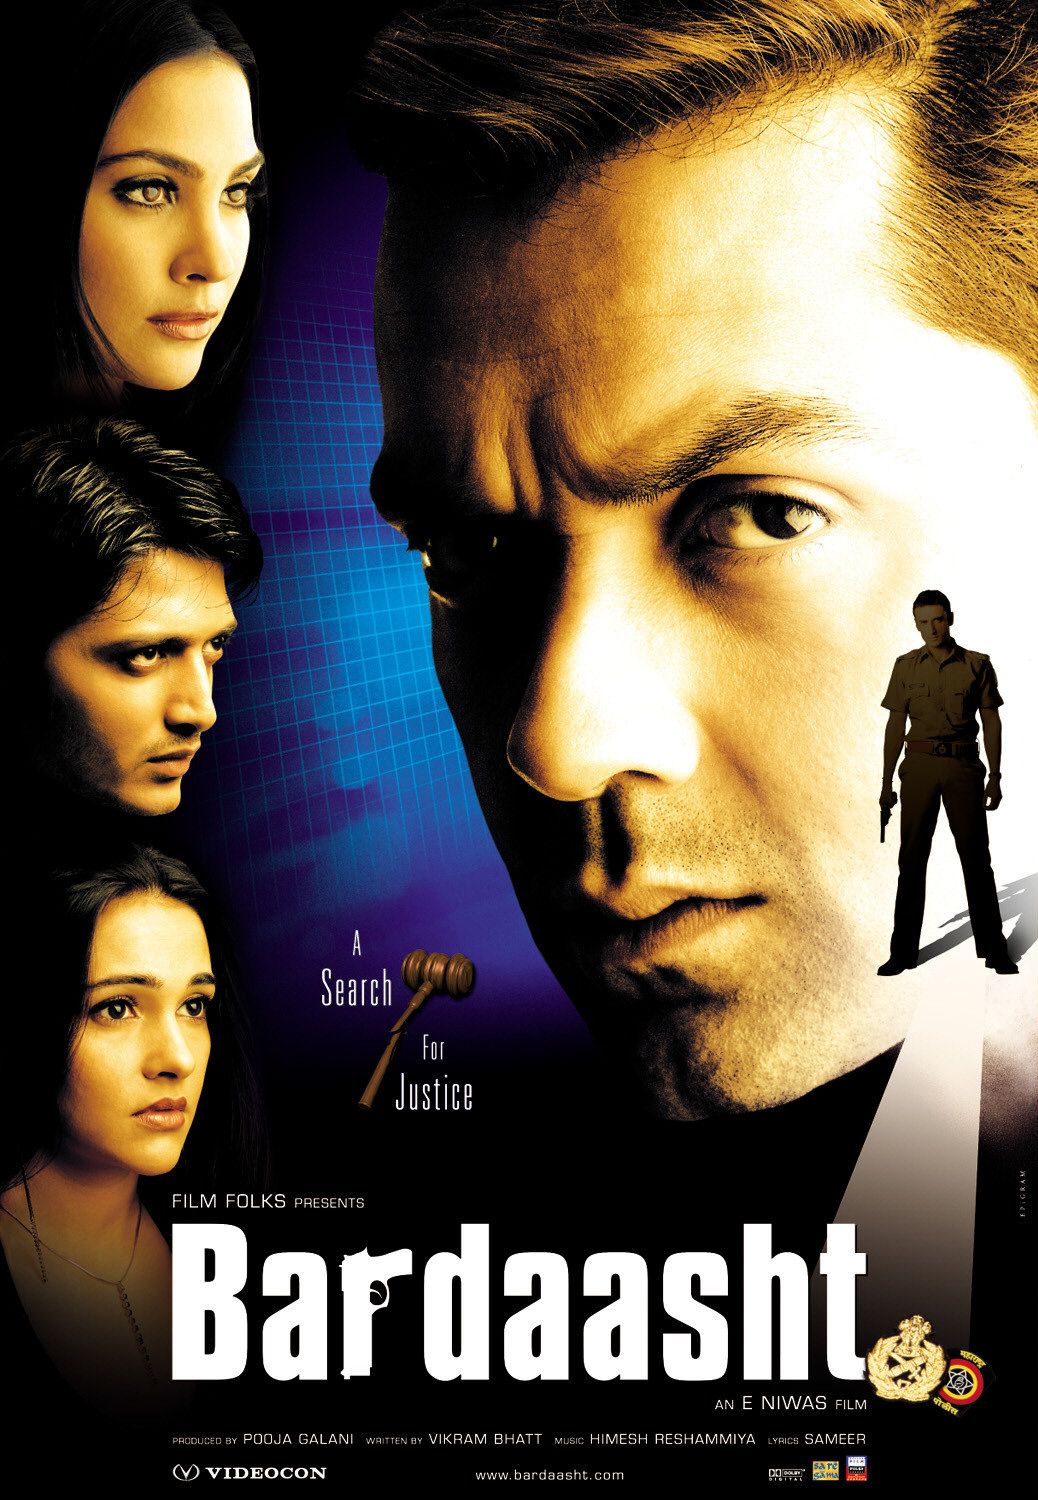 bardaasht-2004-6156-poster.jpg